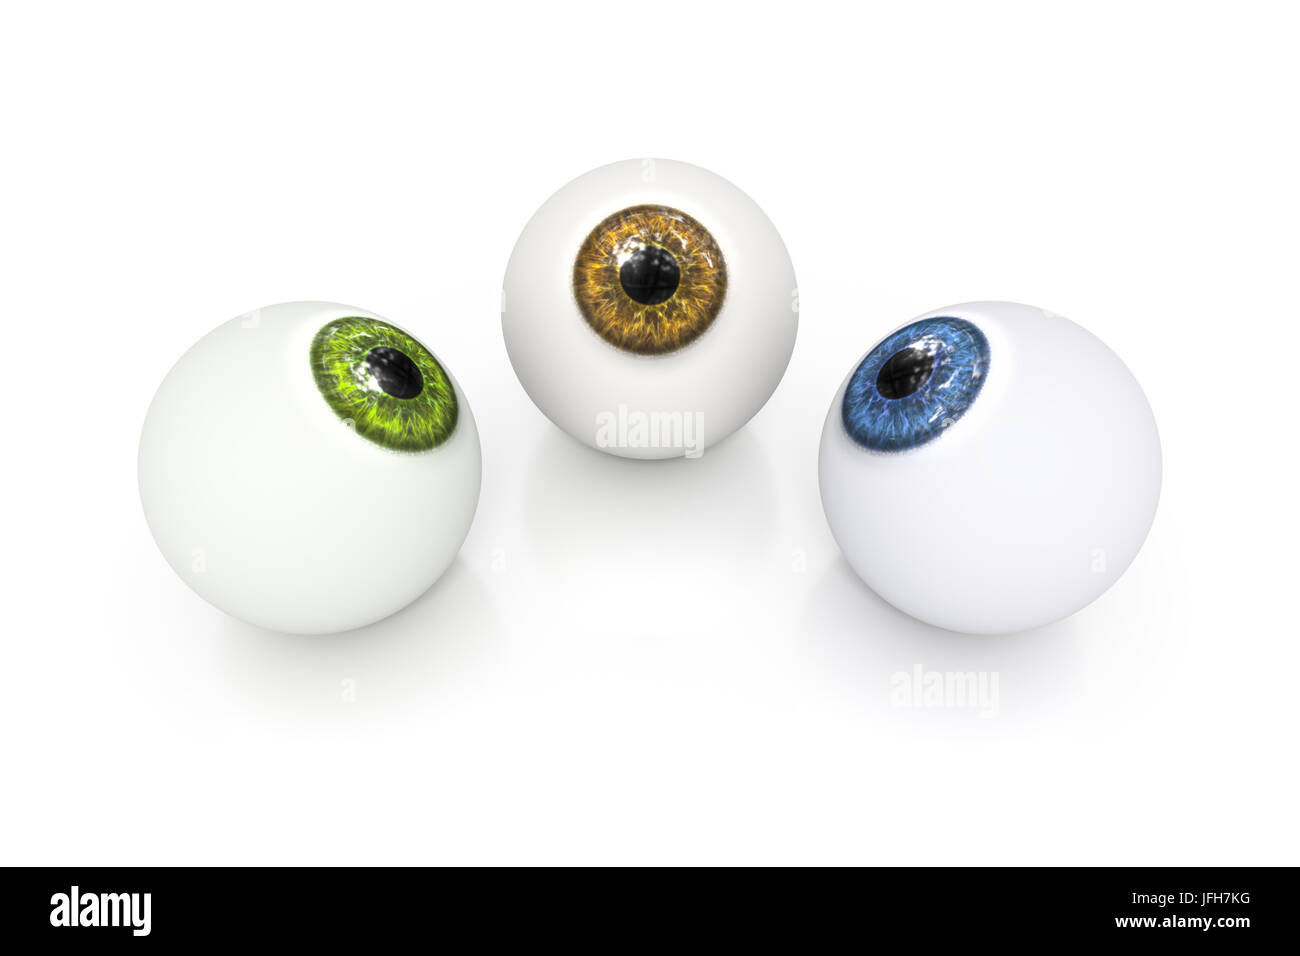 15mm Verde Globo Ocular pelotas Ojos Con Arandelas De Seguridad Metal .15mm tambaleante globos oculares. 